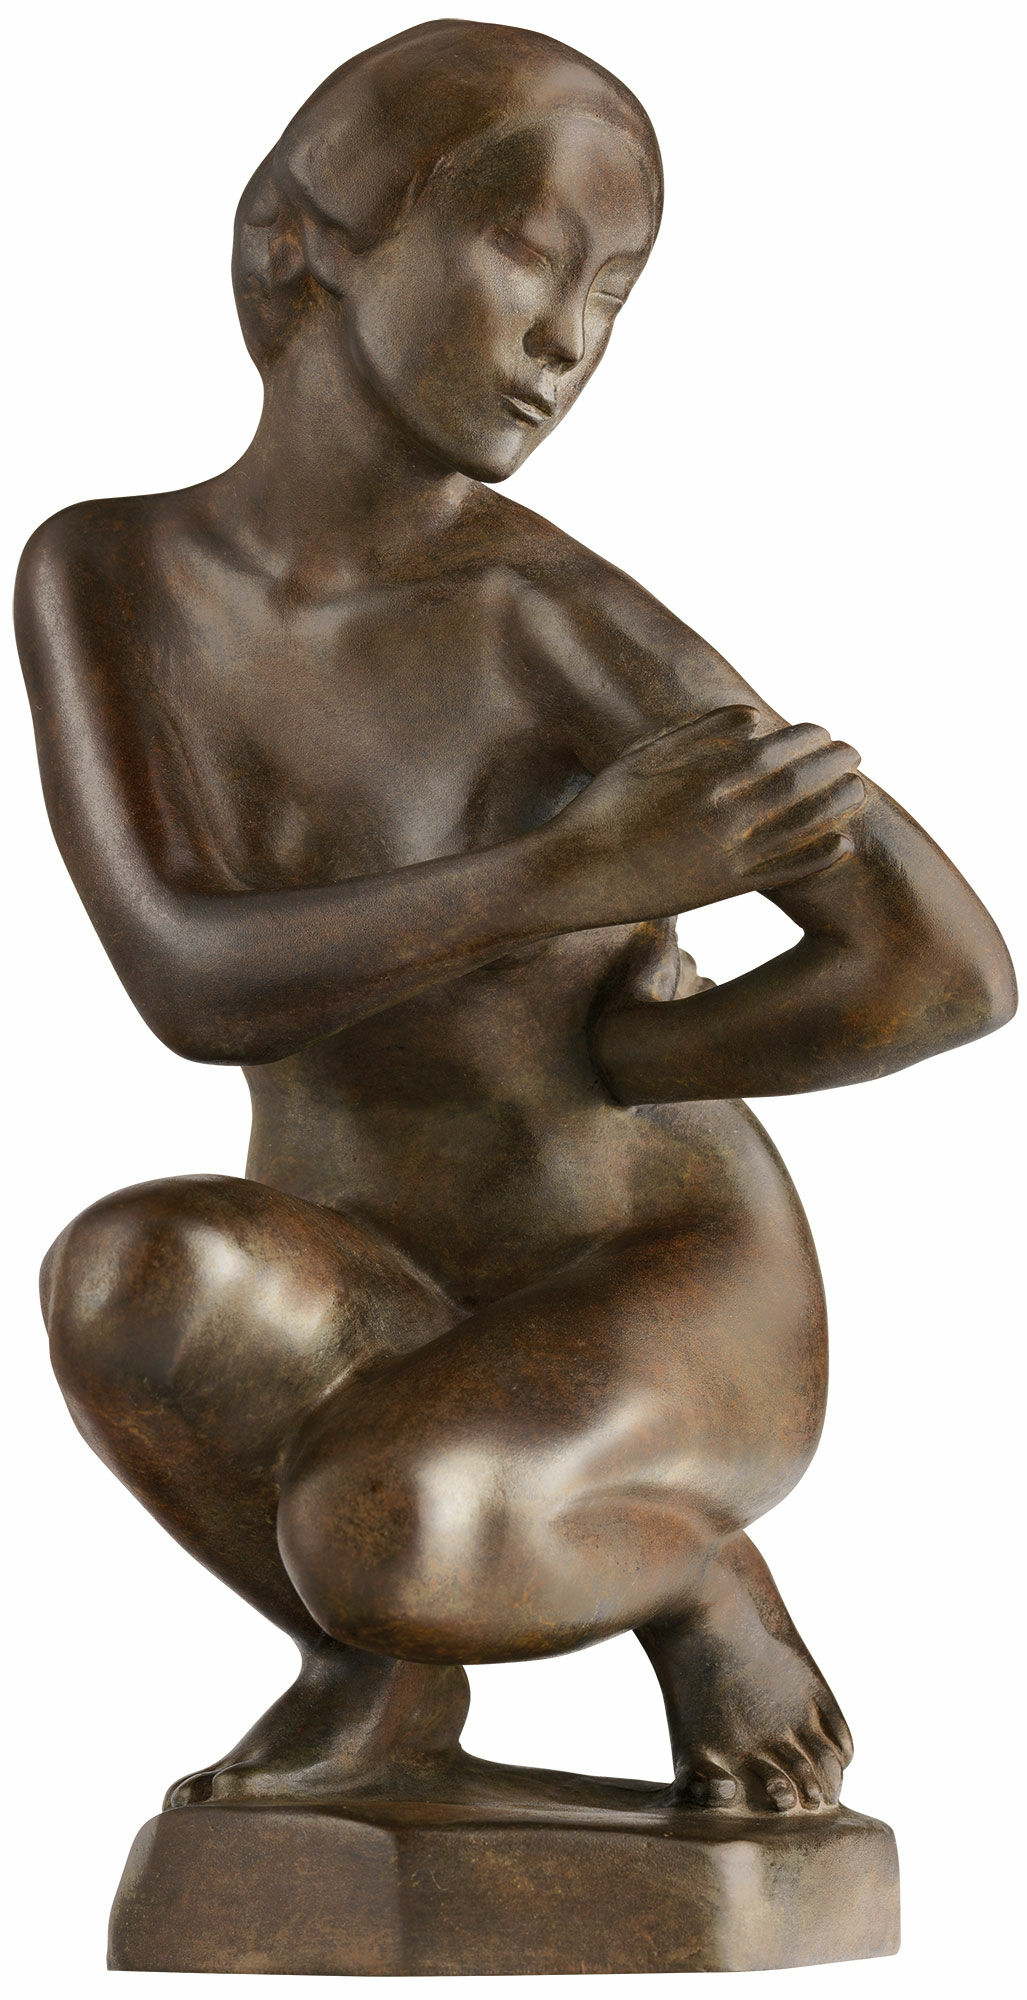 Skulptur "Krummende japansk kvinde", reduktion i bronze von Georg Kolbe